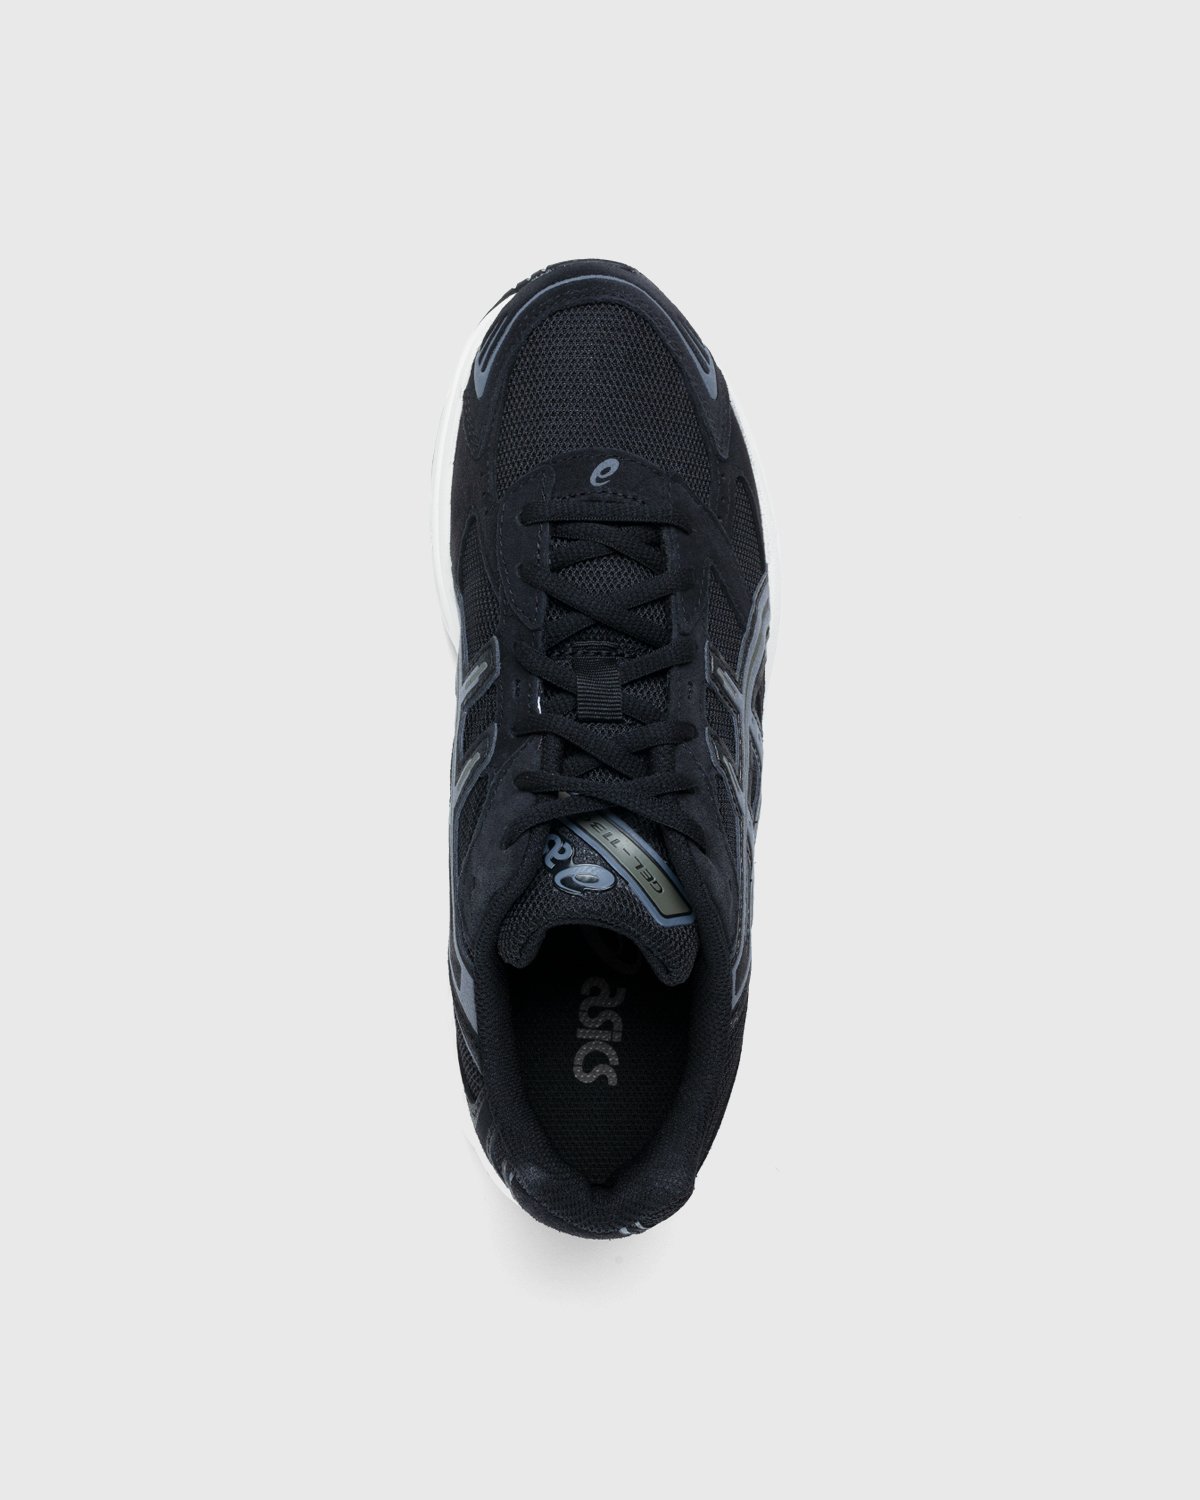 asics - Gel-1130 Black/Metropolis - Footwear - Black - Image 5